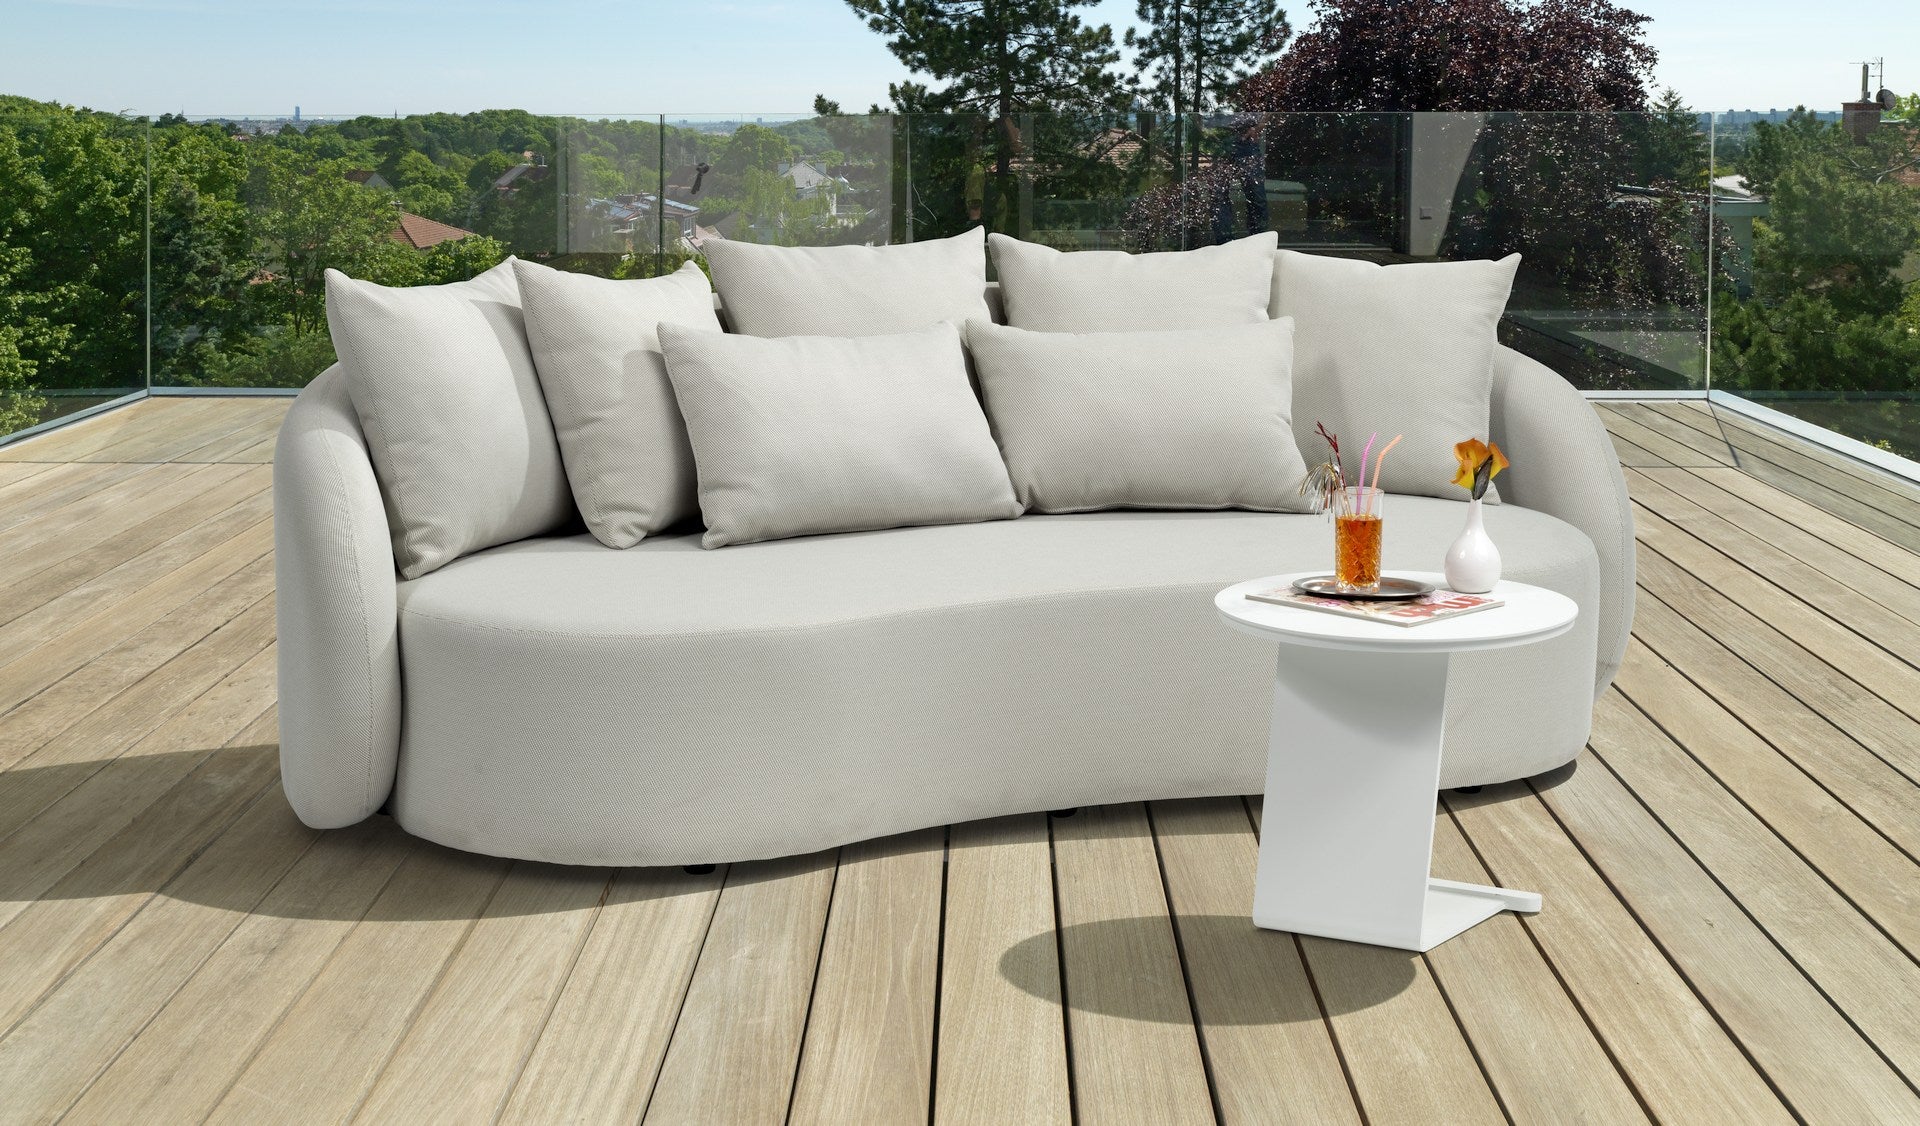 Modernes Letizia Garten-Sofa in Creme mit wasserabweisendem Axroma-Stoff und zahlreichen Rückenkissen, arrangiert auf einer Holzterrasse mit einem eleganten weißen Beistelltisch, präsentiert als ideale Ergänzung für stilvolles Outdoor-Entspannen.